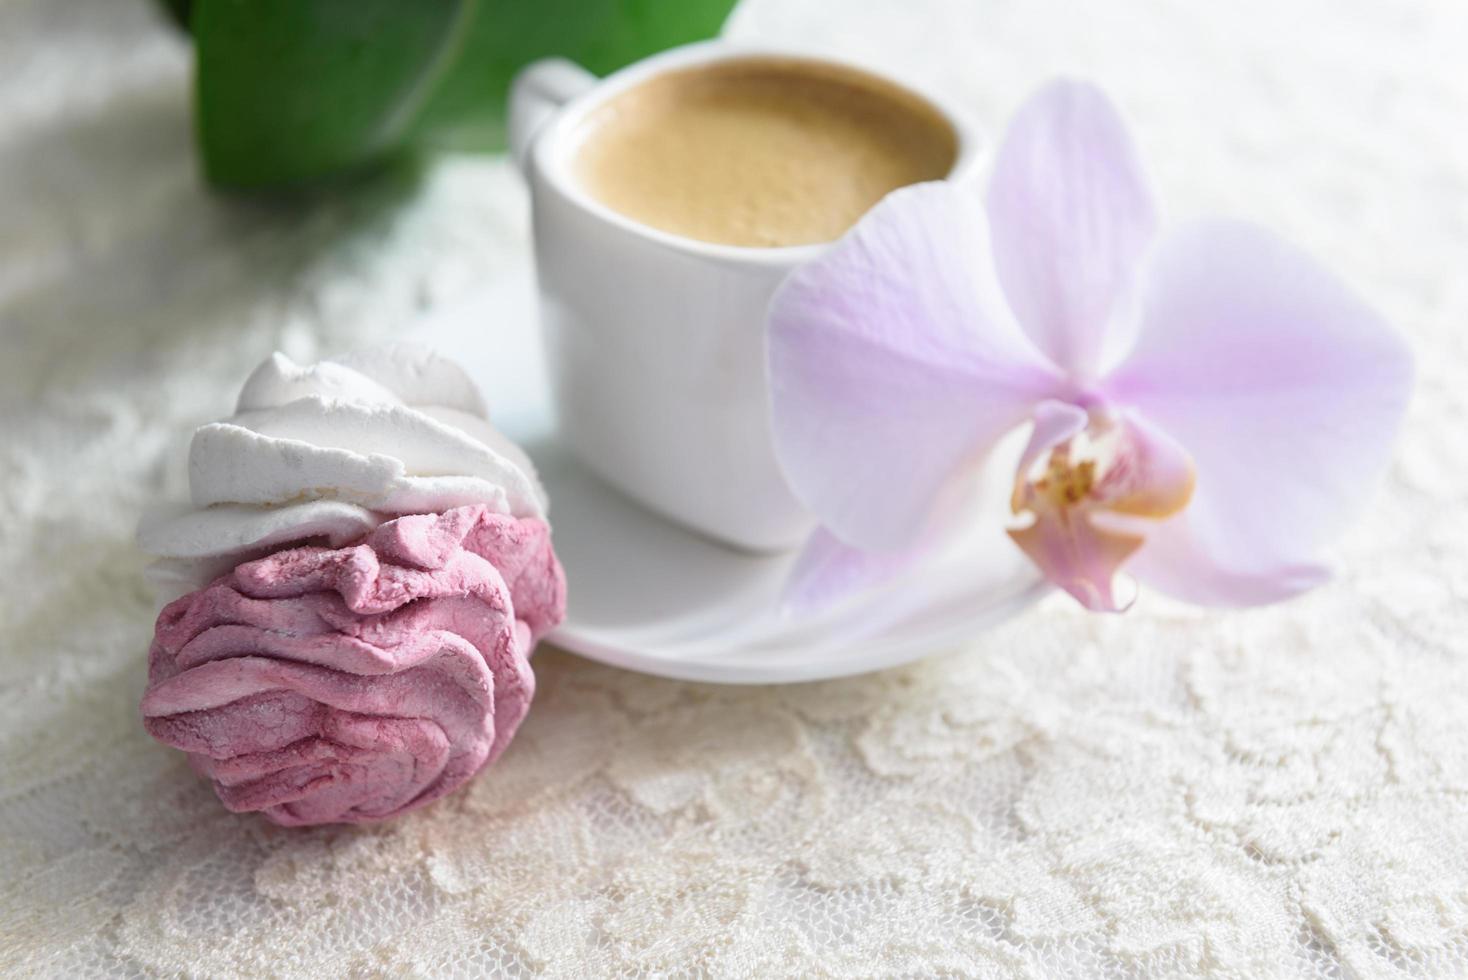 guimauves artisanales blanches et roses avec café photo